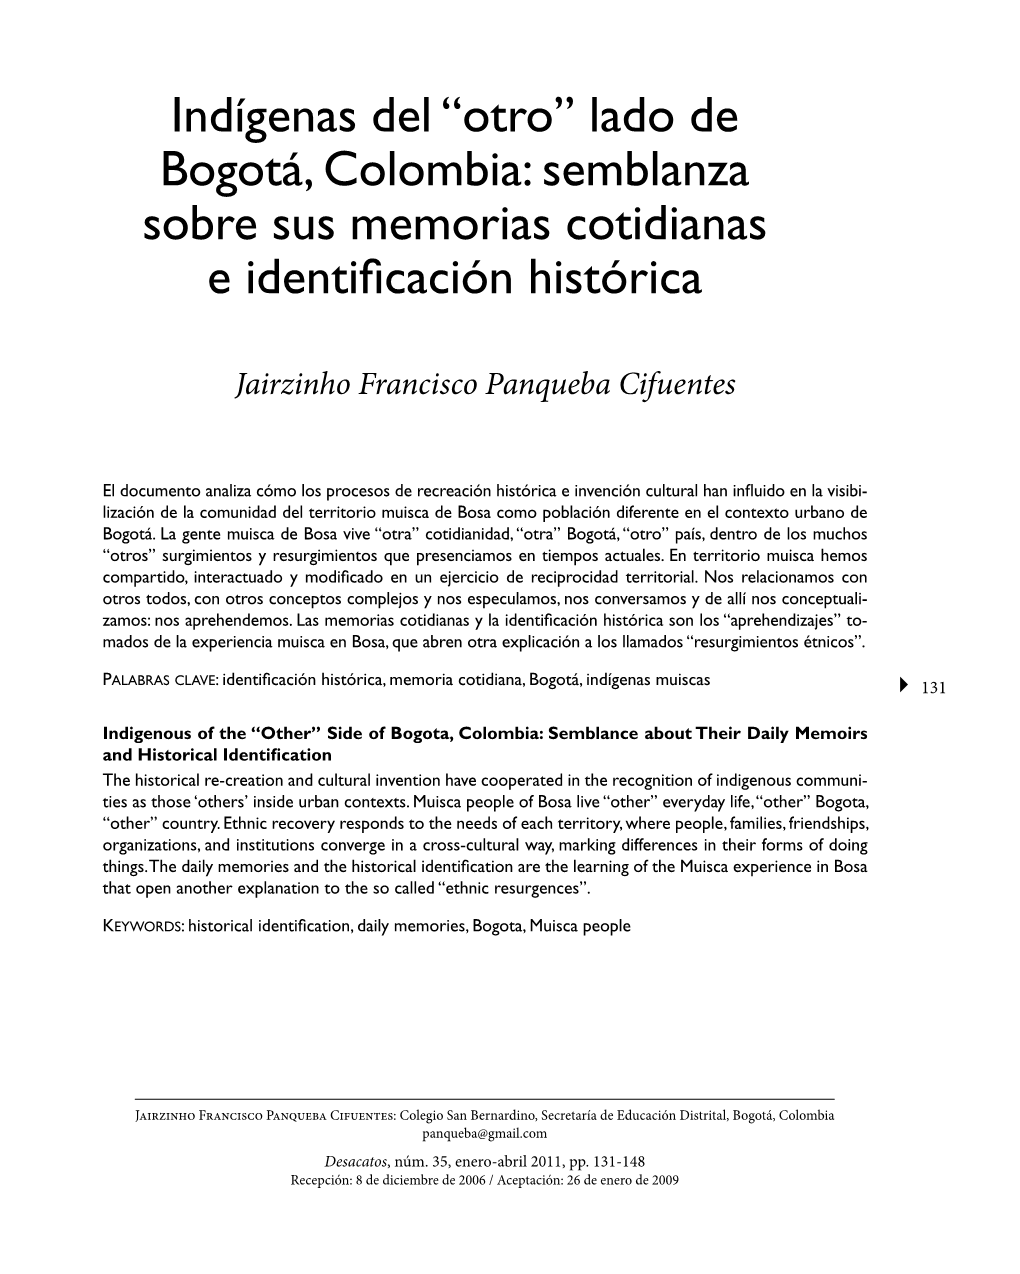 Indígenas Del “Otro” Lado De Bogotá, Colombia: Semblanza Sobre Sus Memorias Cotidianas E Identificación Histórica